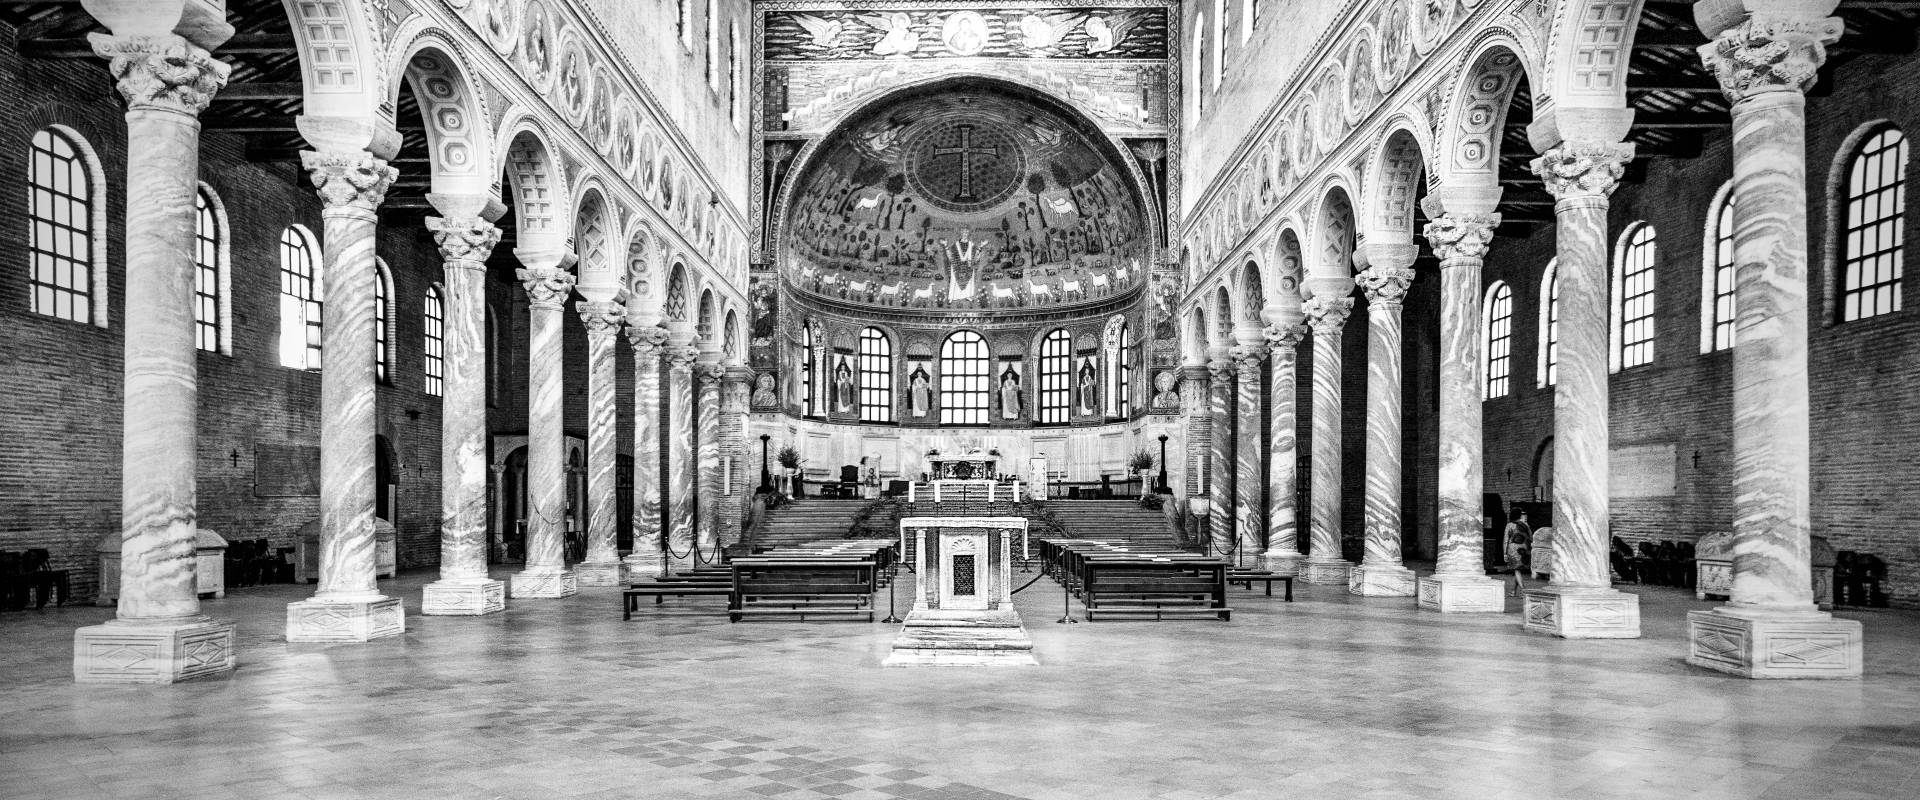 Q003003 Basilica di Sant'Apollinare in Classe - Ravenna - foto di Vanni Lazzari